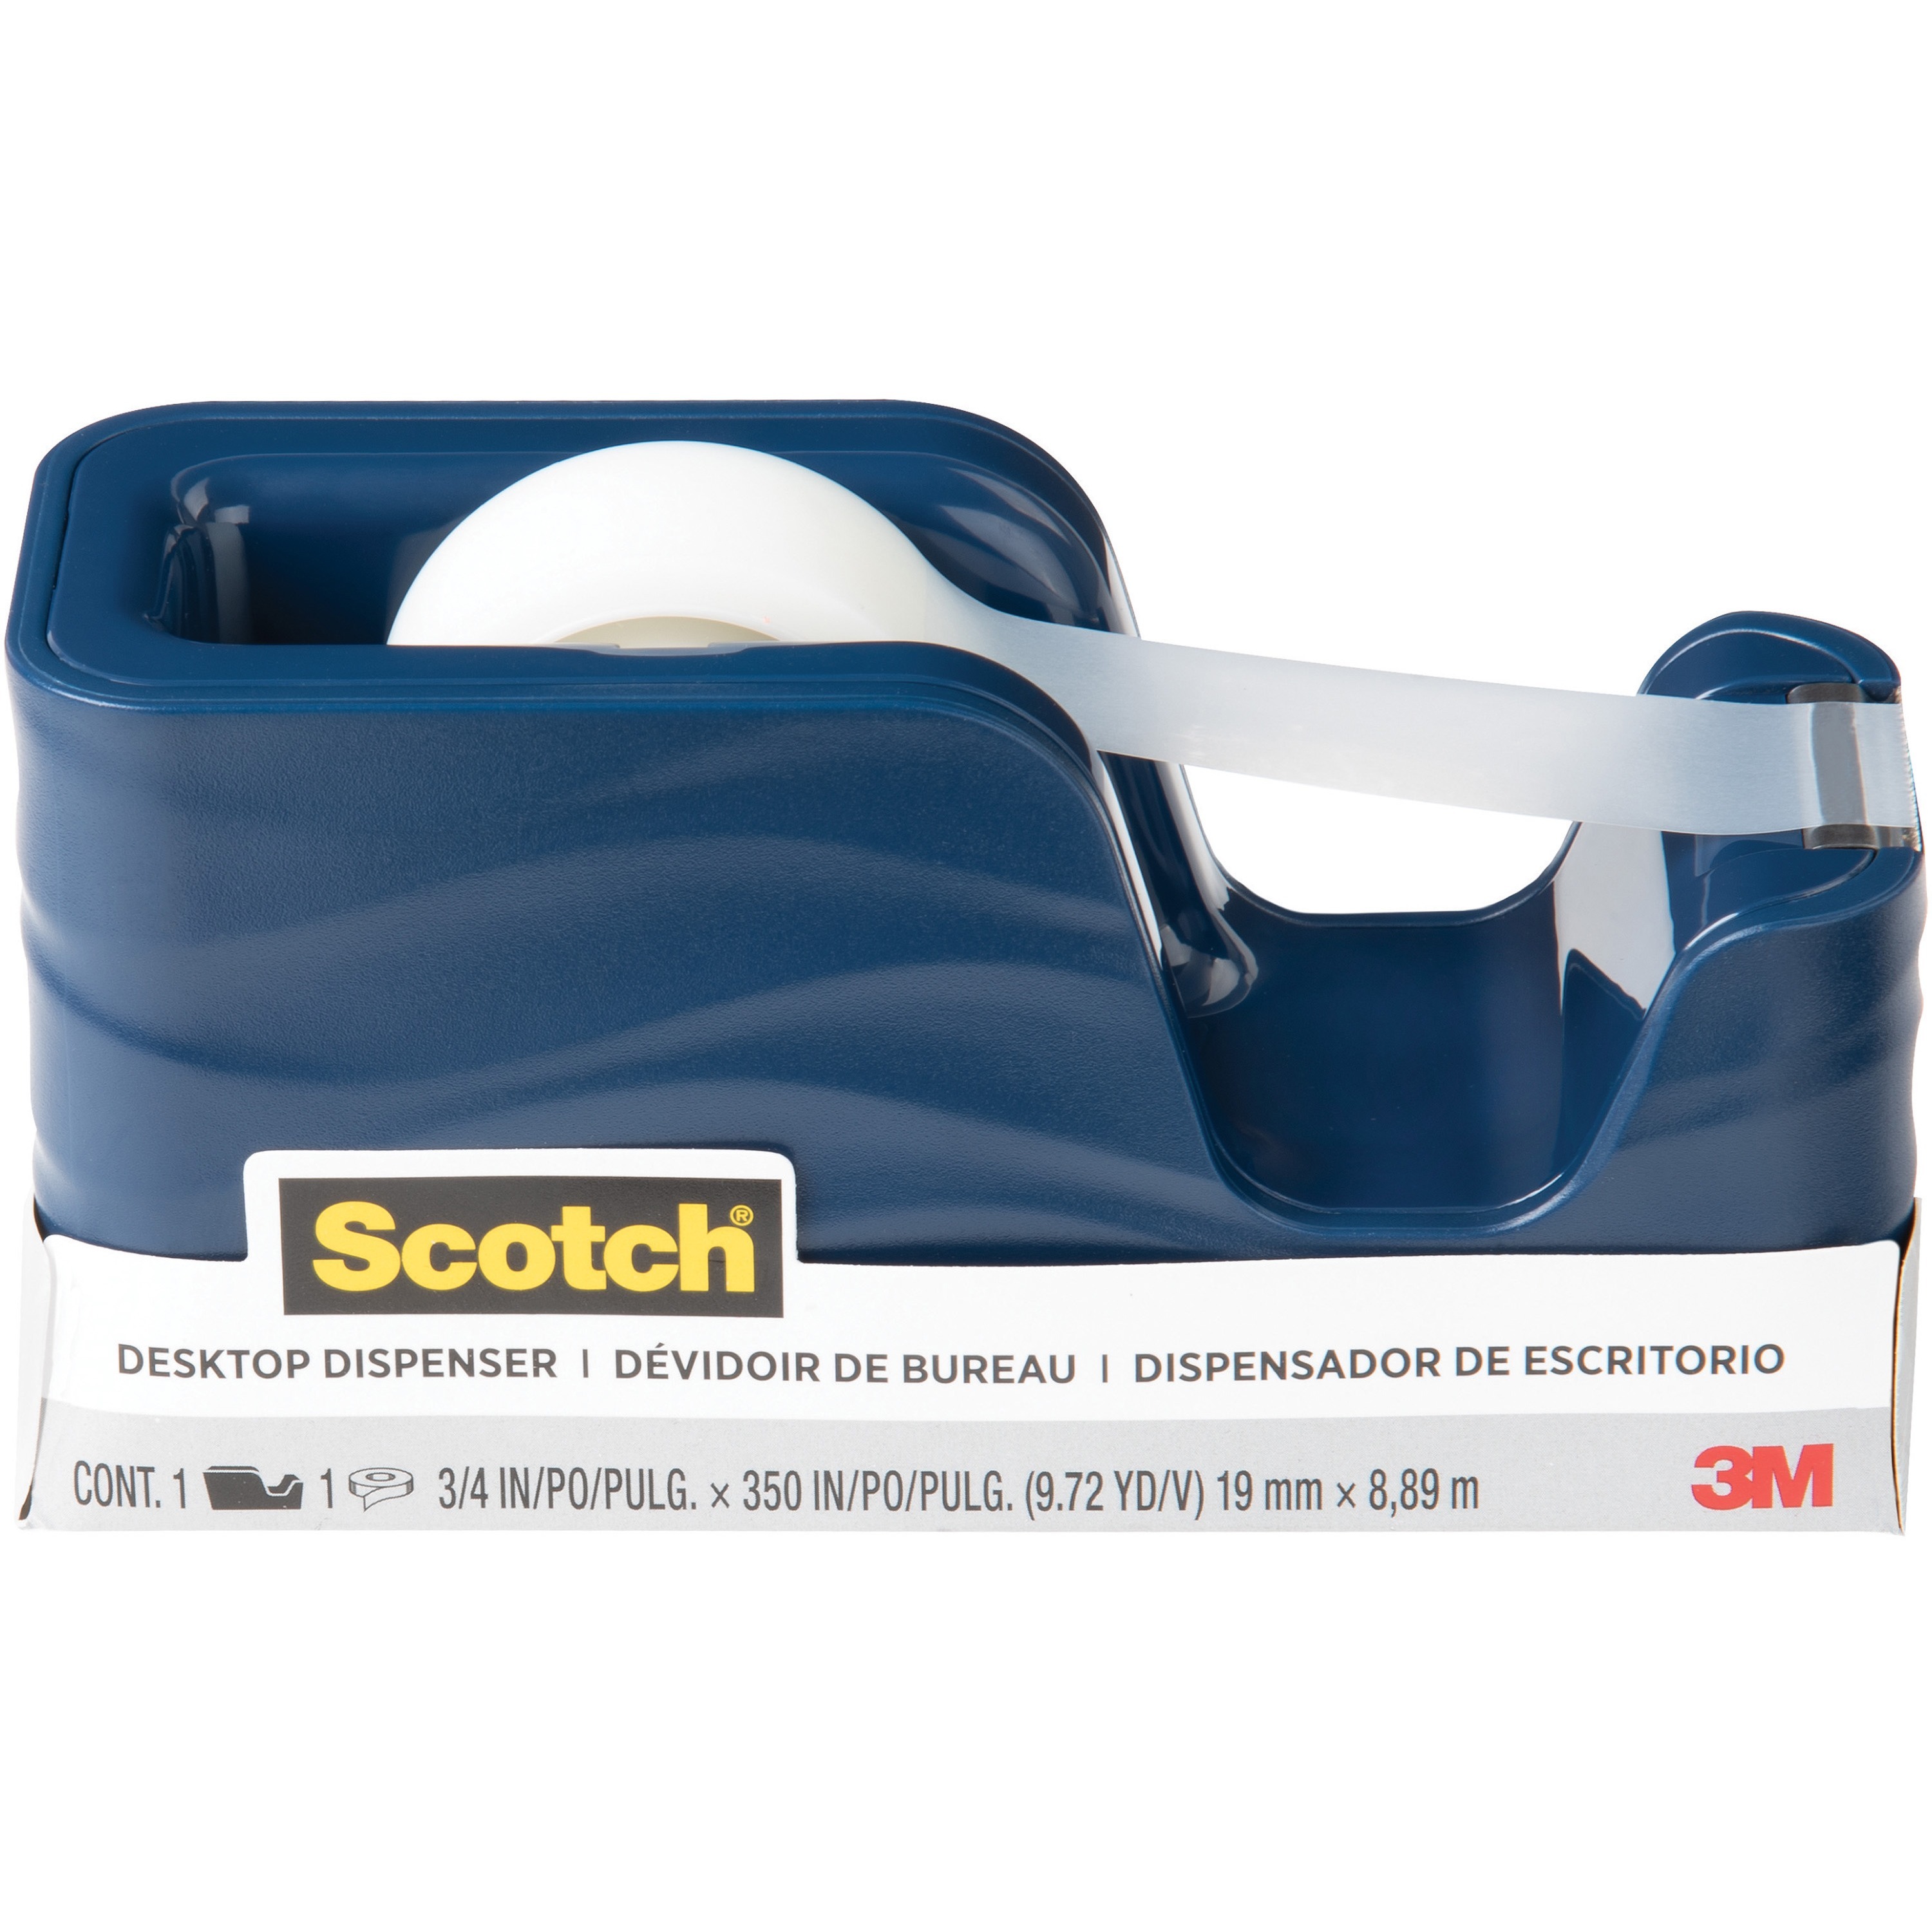 3M Scotch™ Magic Tape in Handheld Dispenser, 1 Core, 0.75 x 25 ft,  Clear, 4/Pack, MMM4105